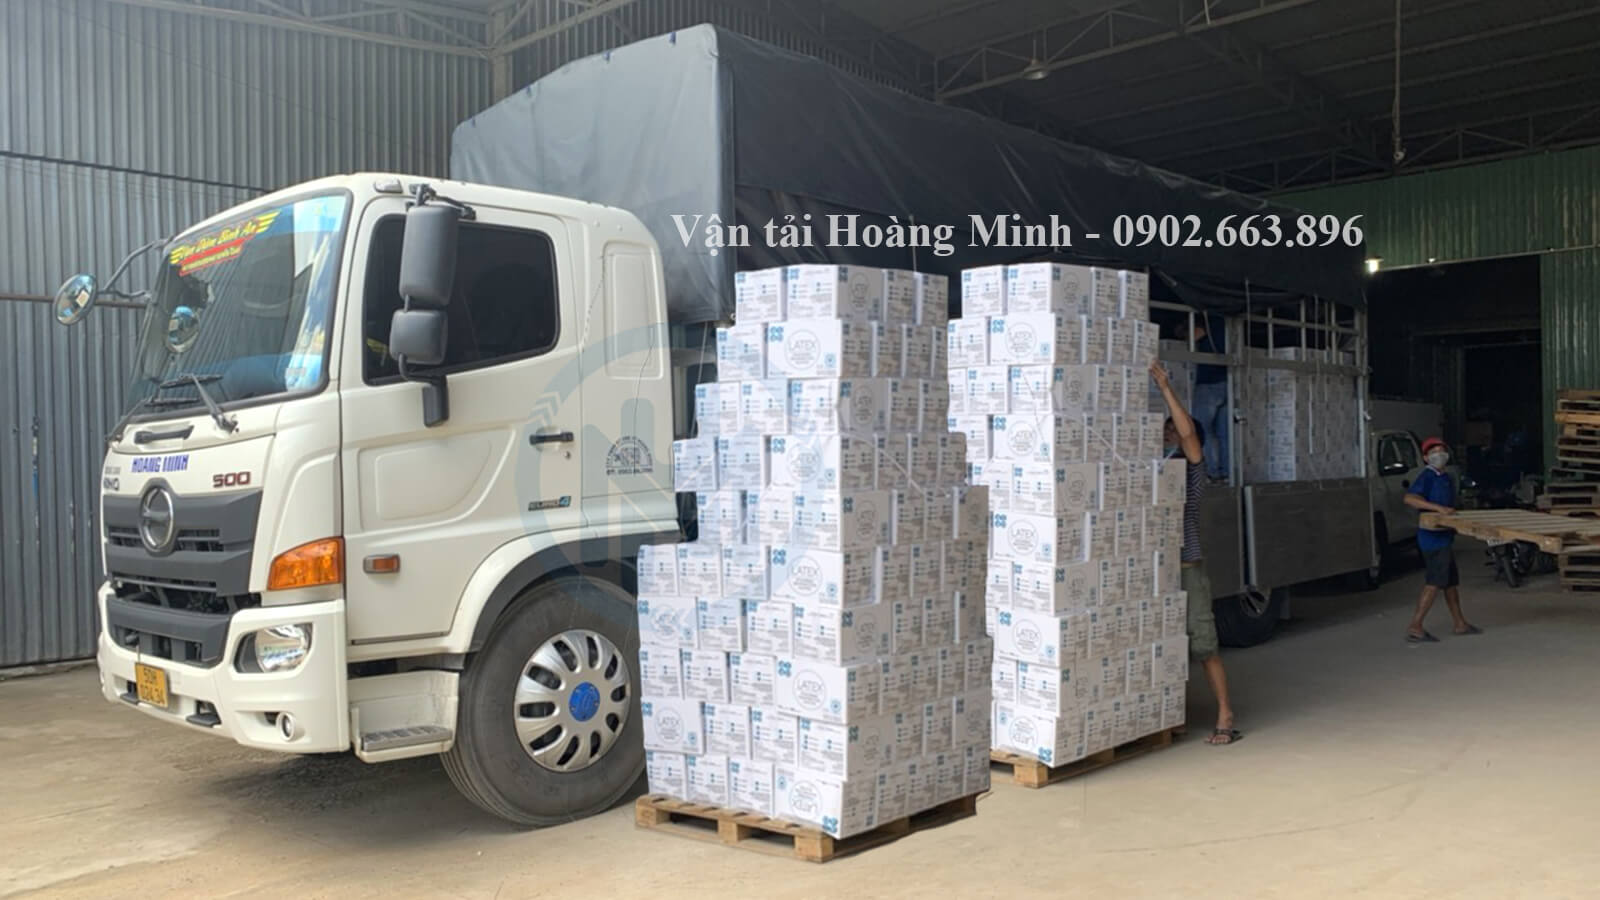 Hình ảnh xe tải Hoàng Minh vận chuyển bột trét cho khách tại Phú Giáo.jpg